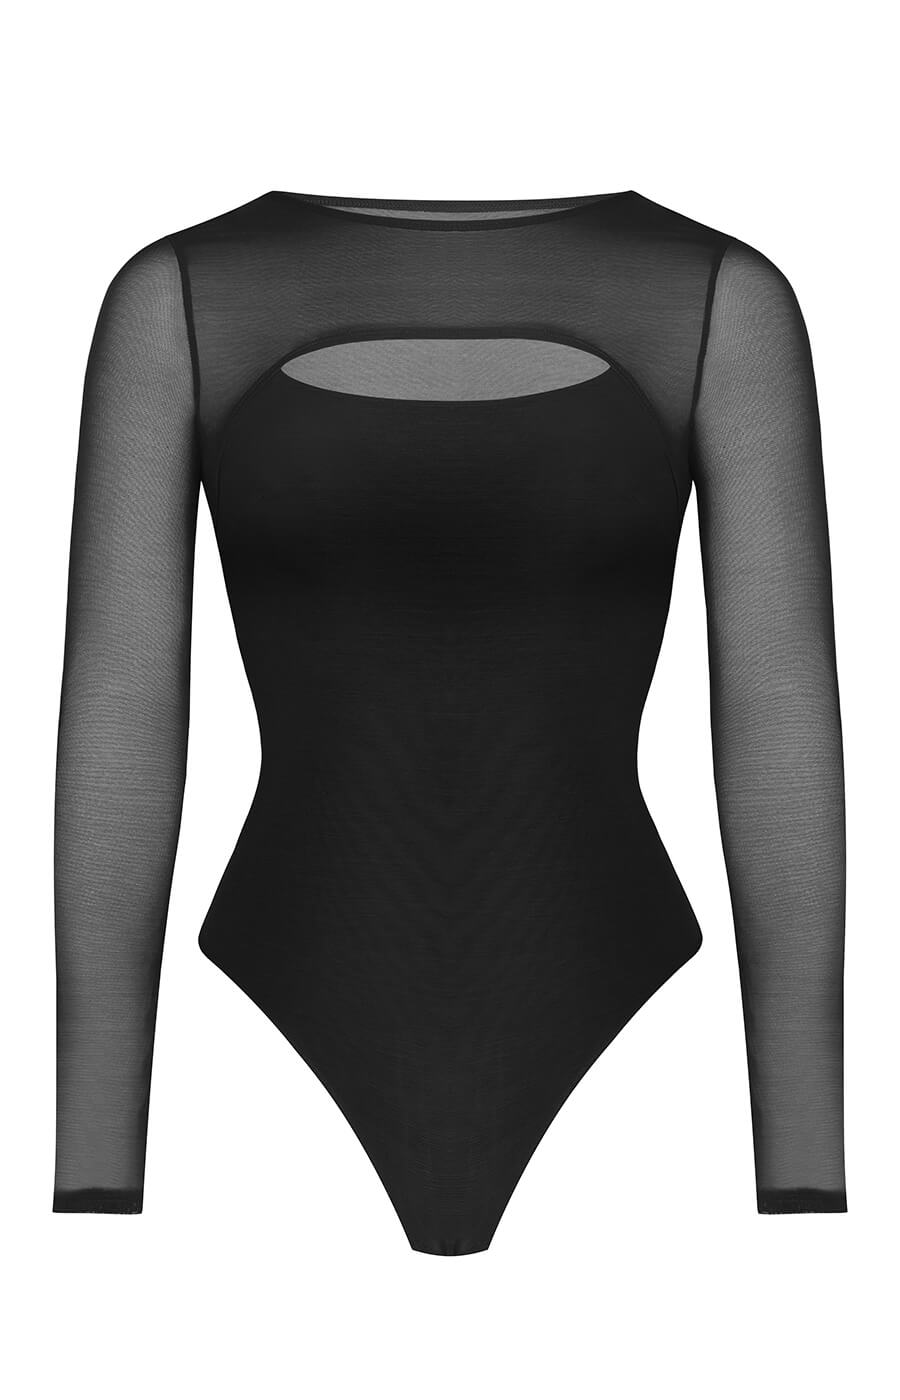 AirSlim® See-Through Mesh Cutout Bodysuit